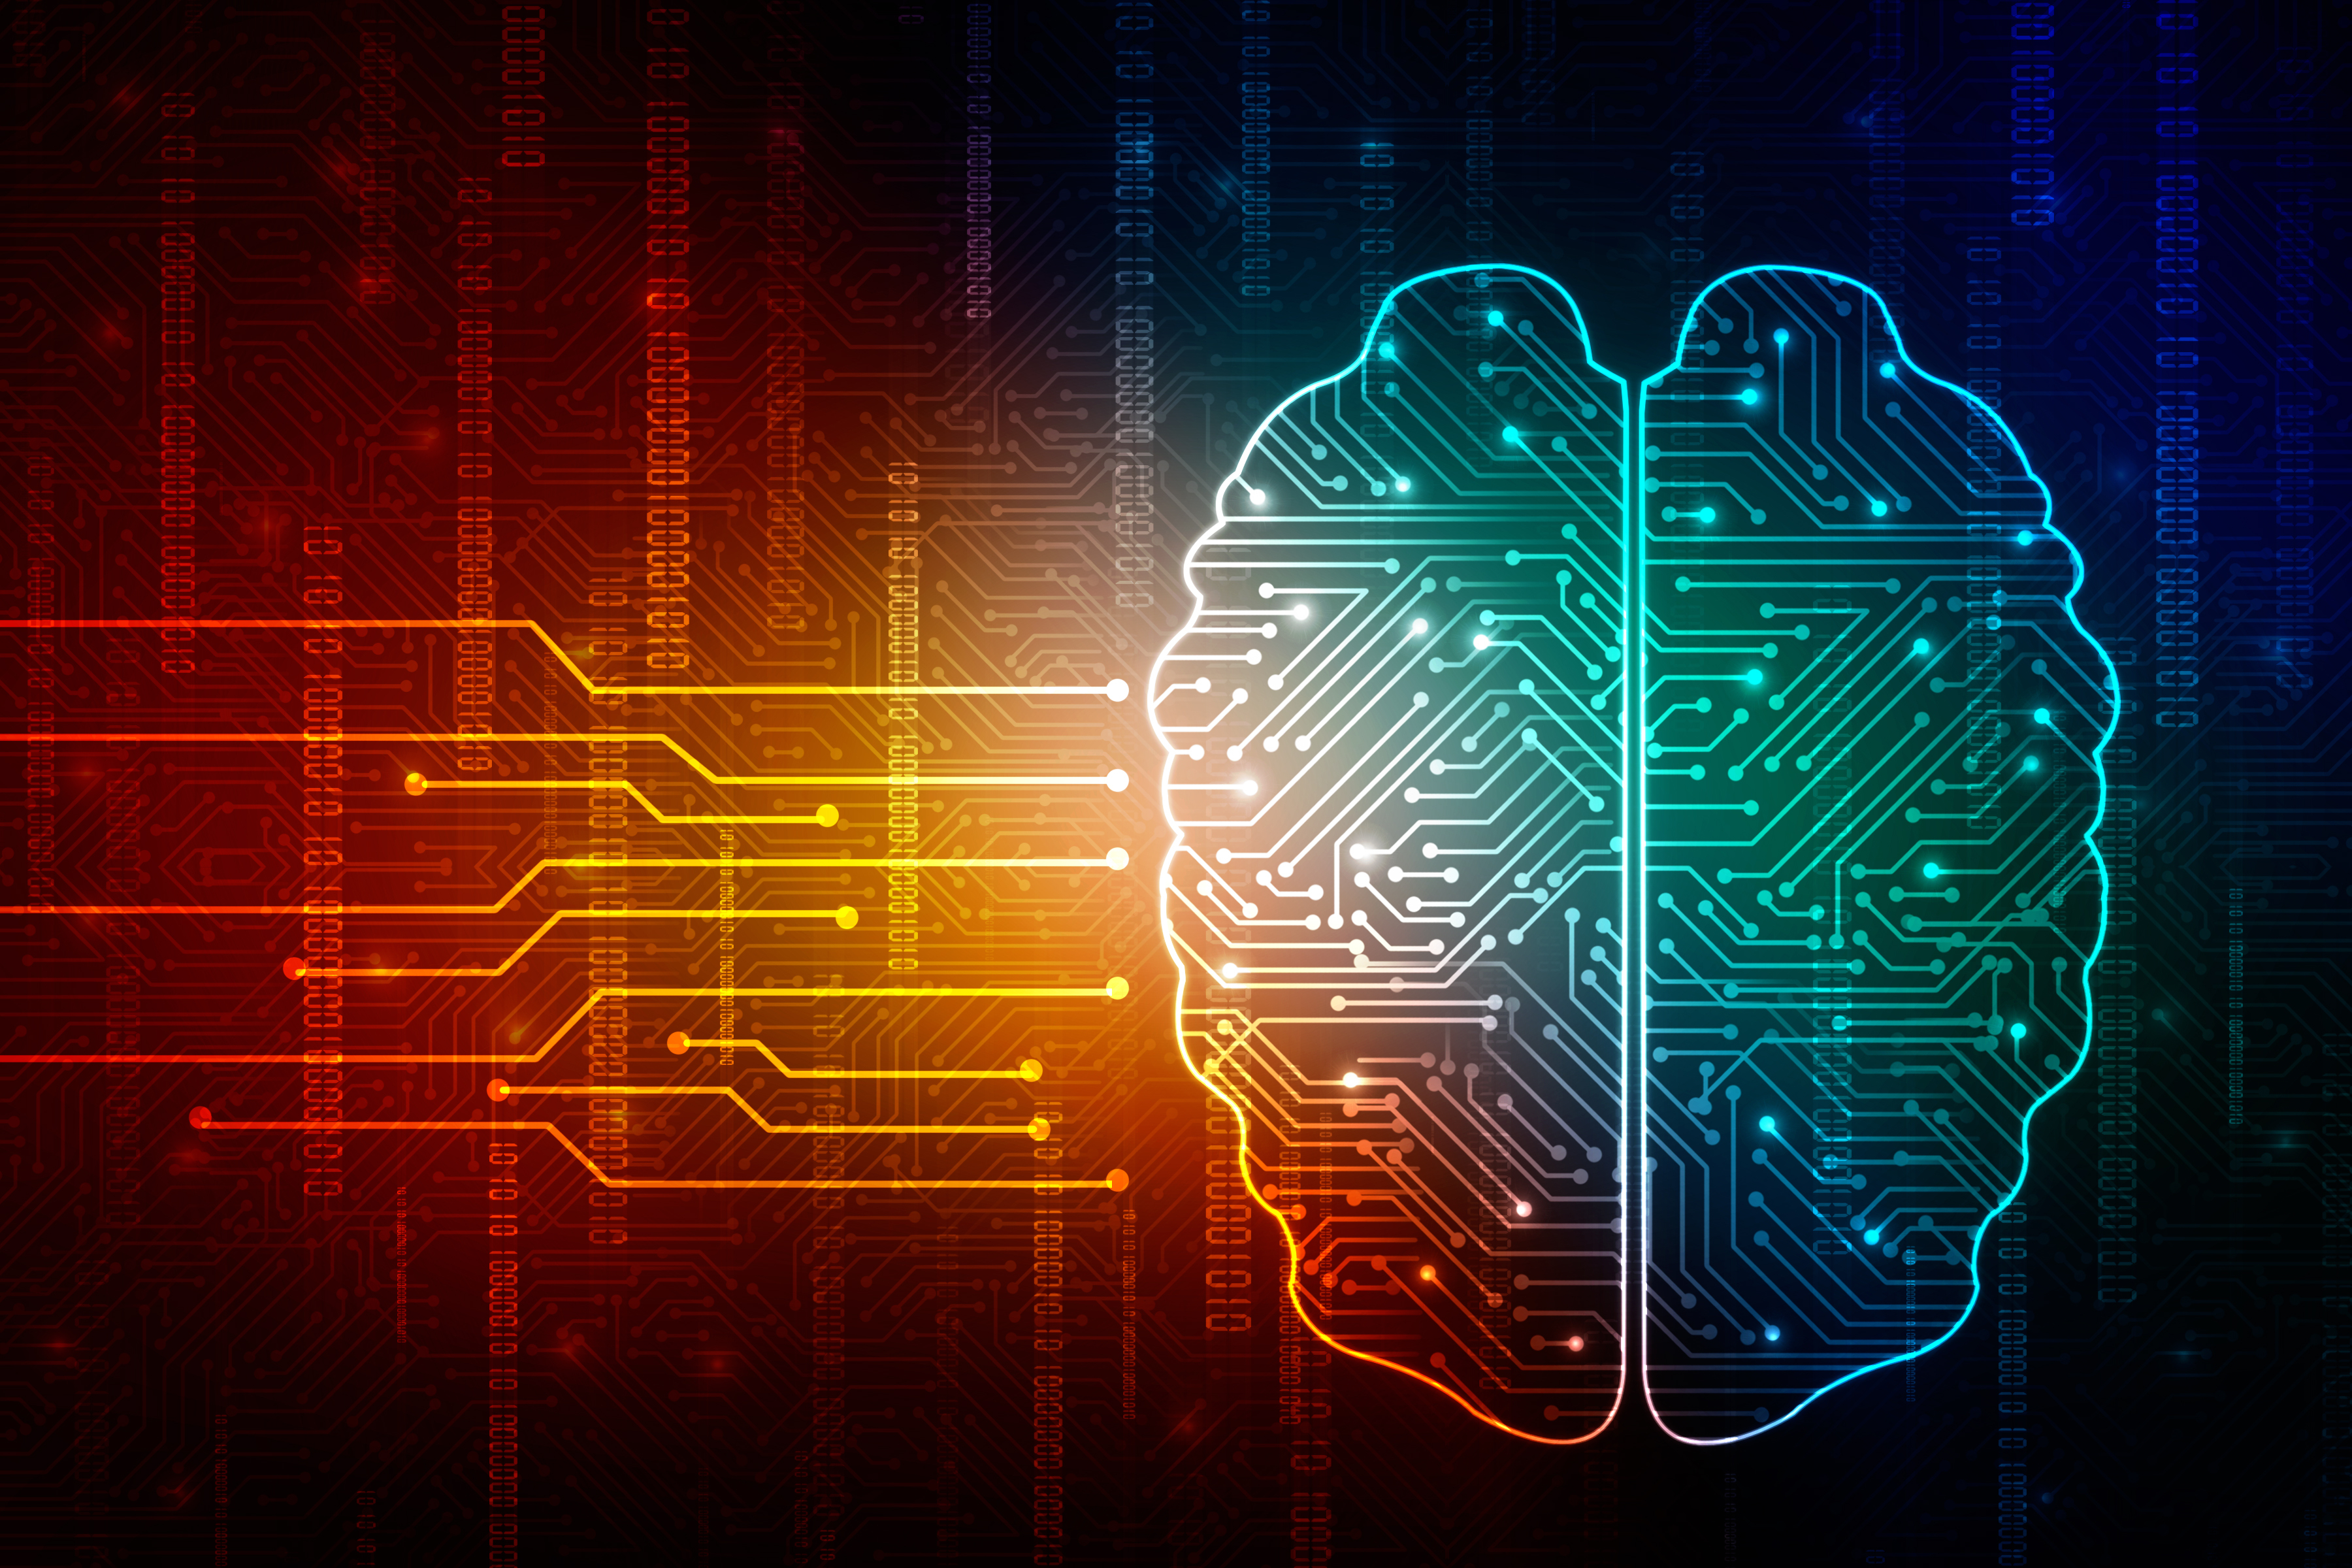 Digital brain by jijomathaidesigners via Shutterstock